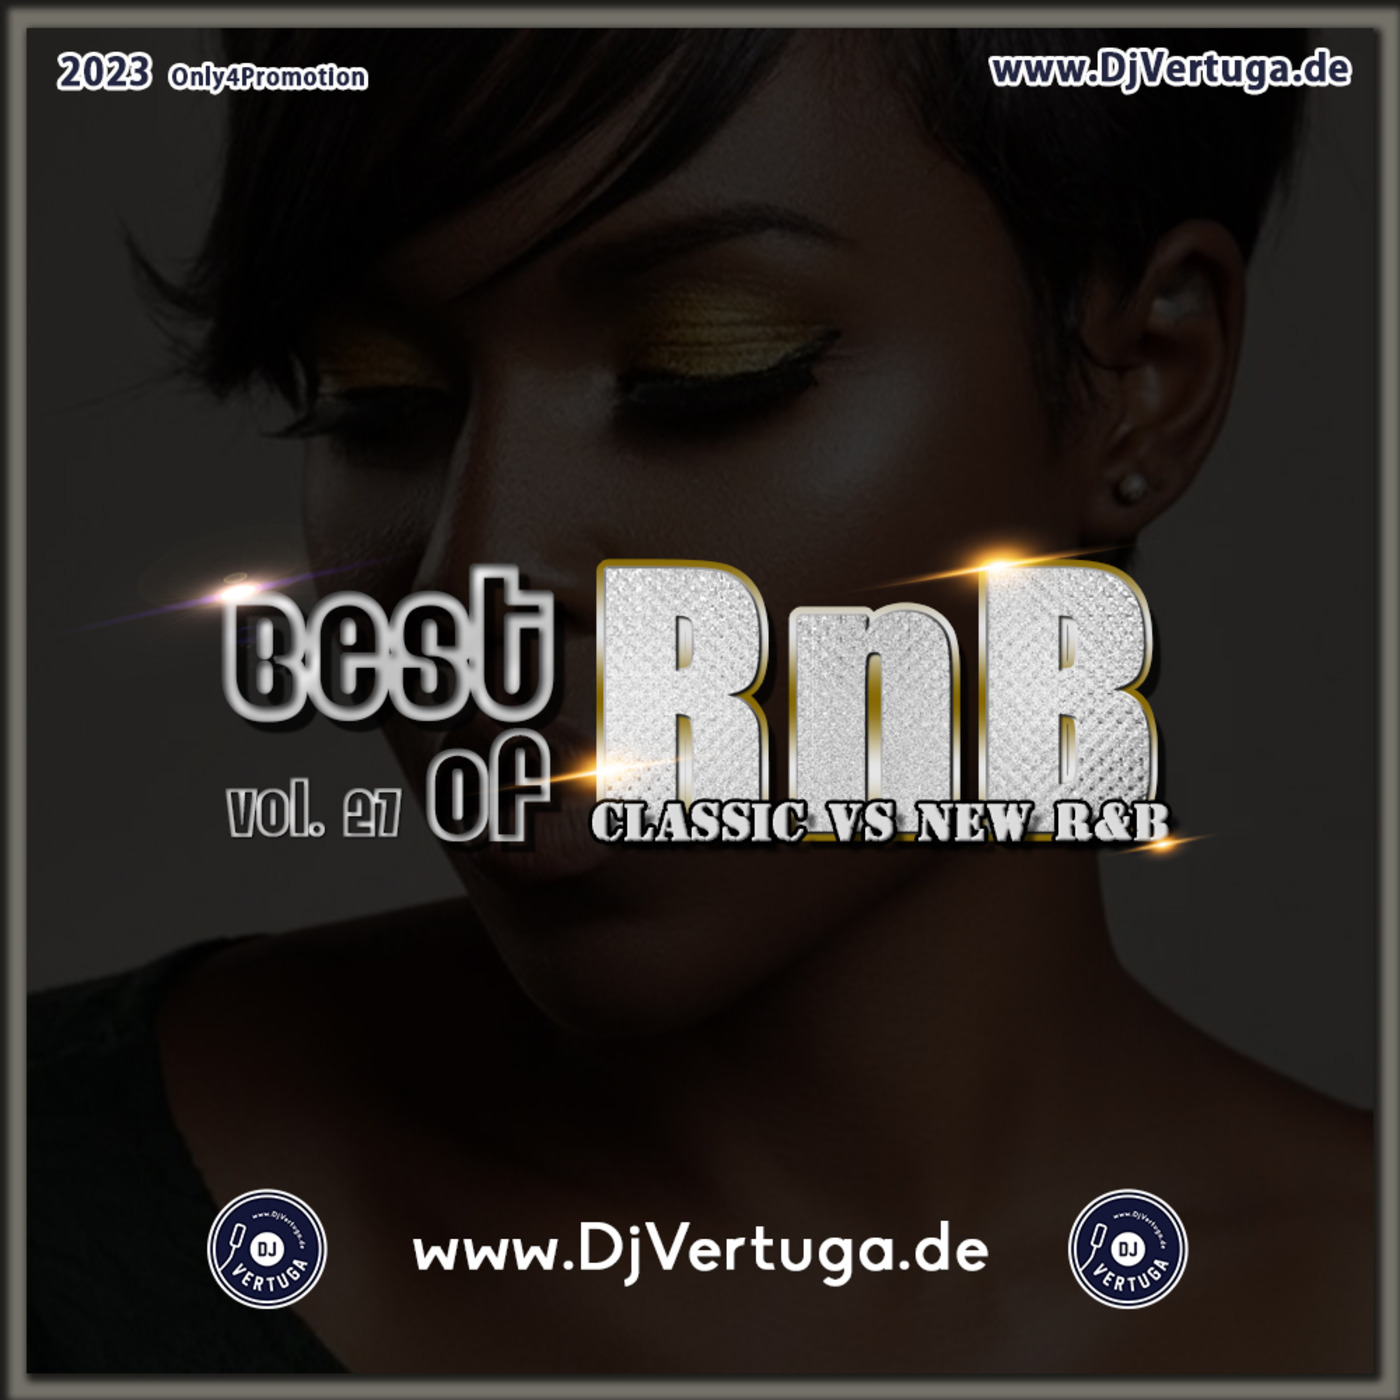 Dj Vertuga - Best of R&B vol. 27 (Classic VS New R&B)